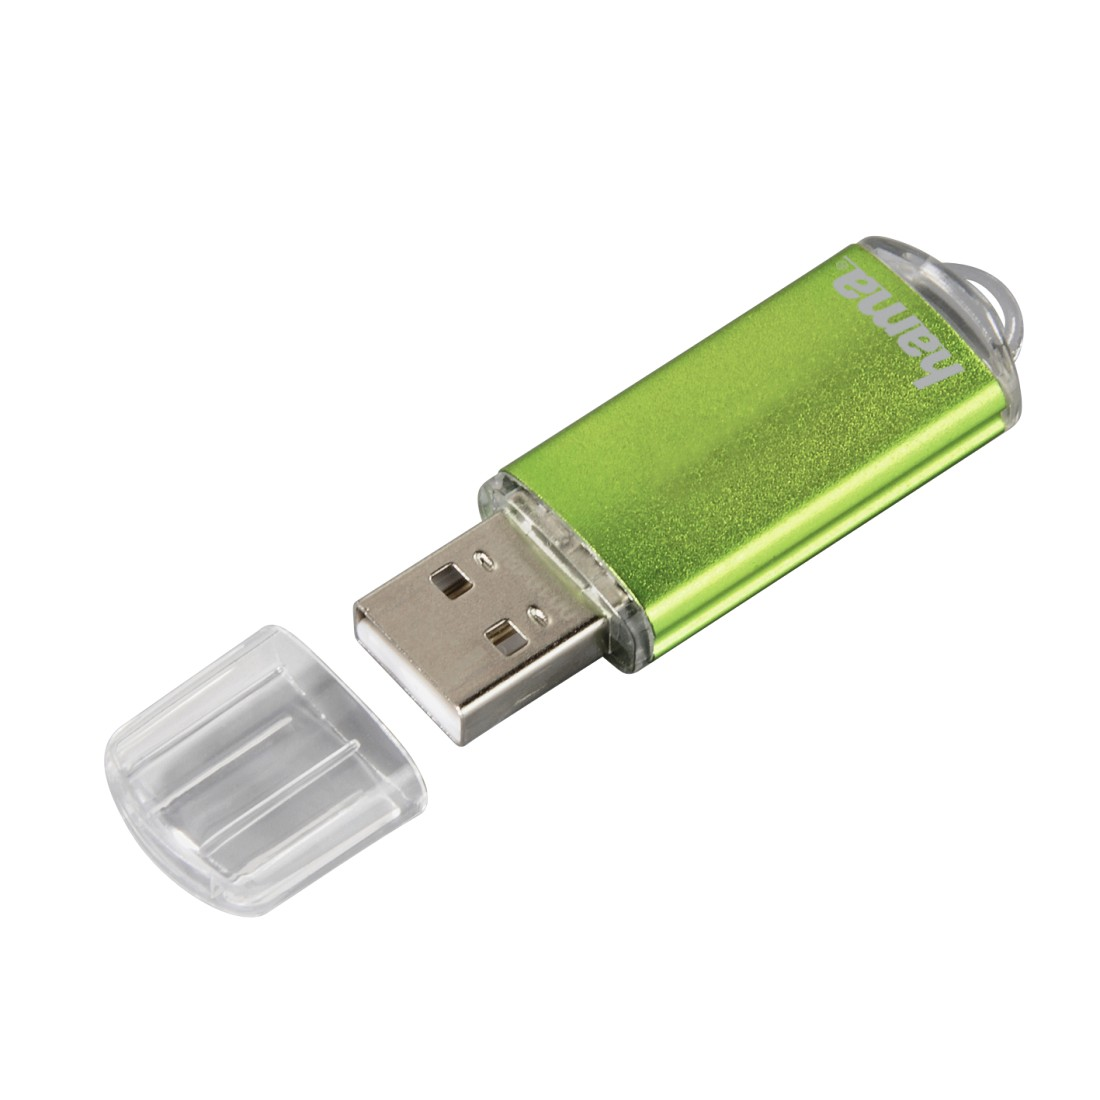 15 64 Laeta Grün HAMA GB, MB/s, USB-Stick,